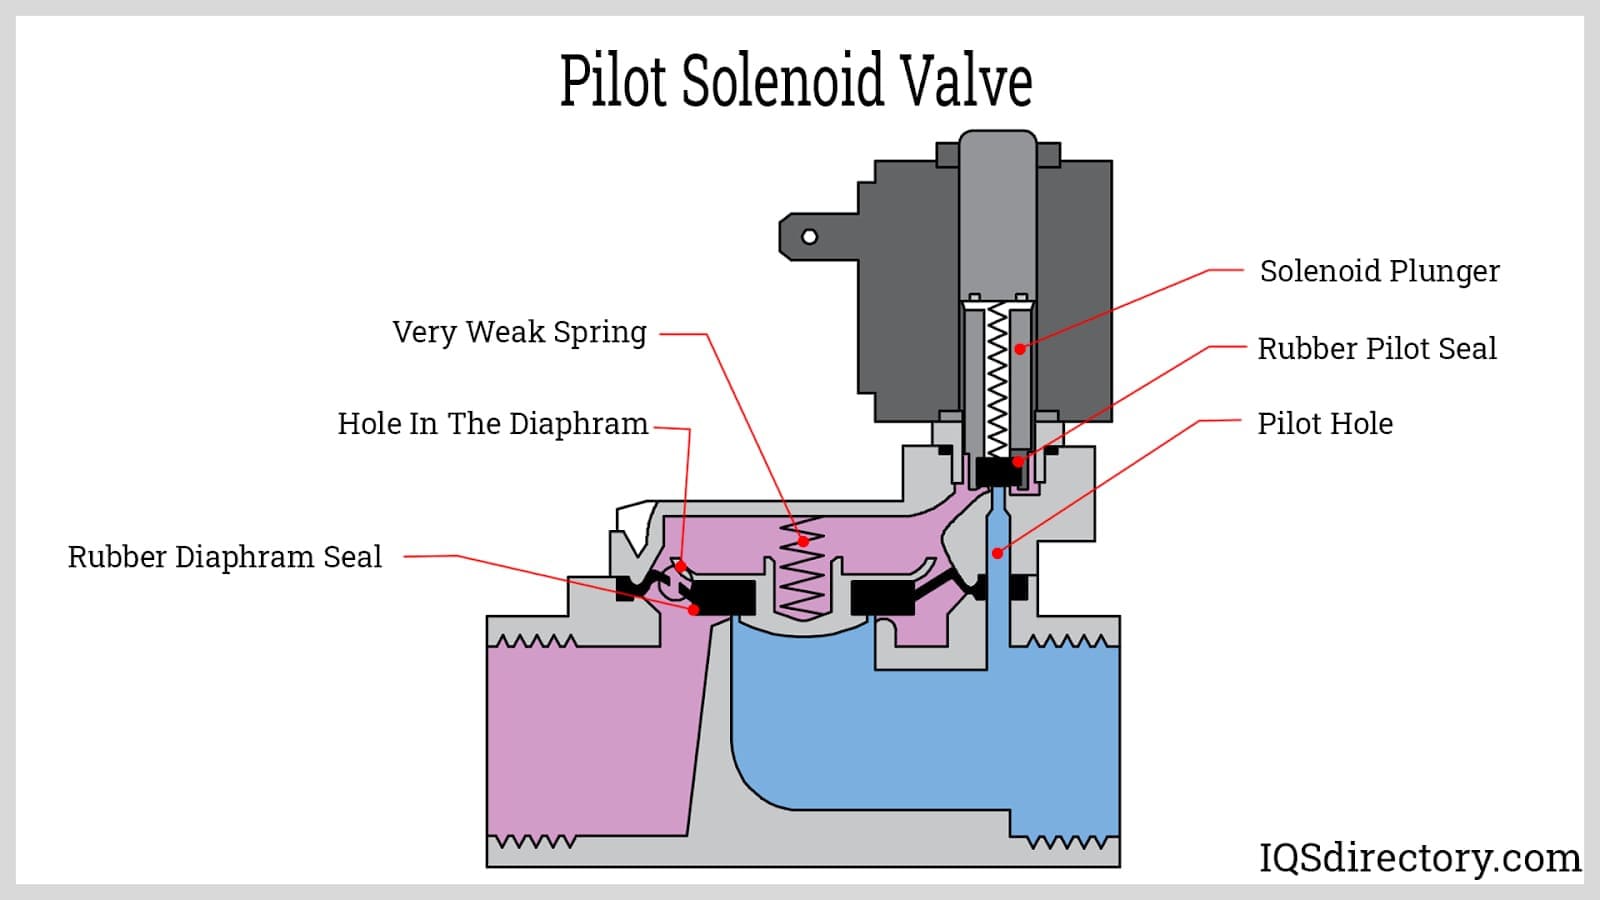 Pilot Solenoid Valve